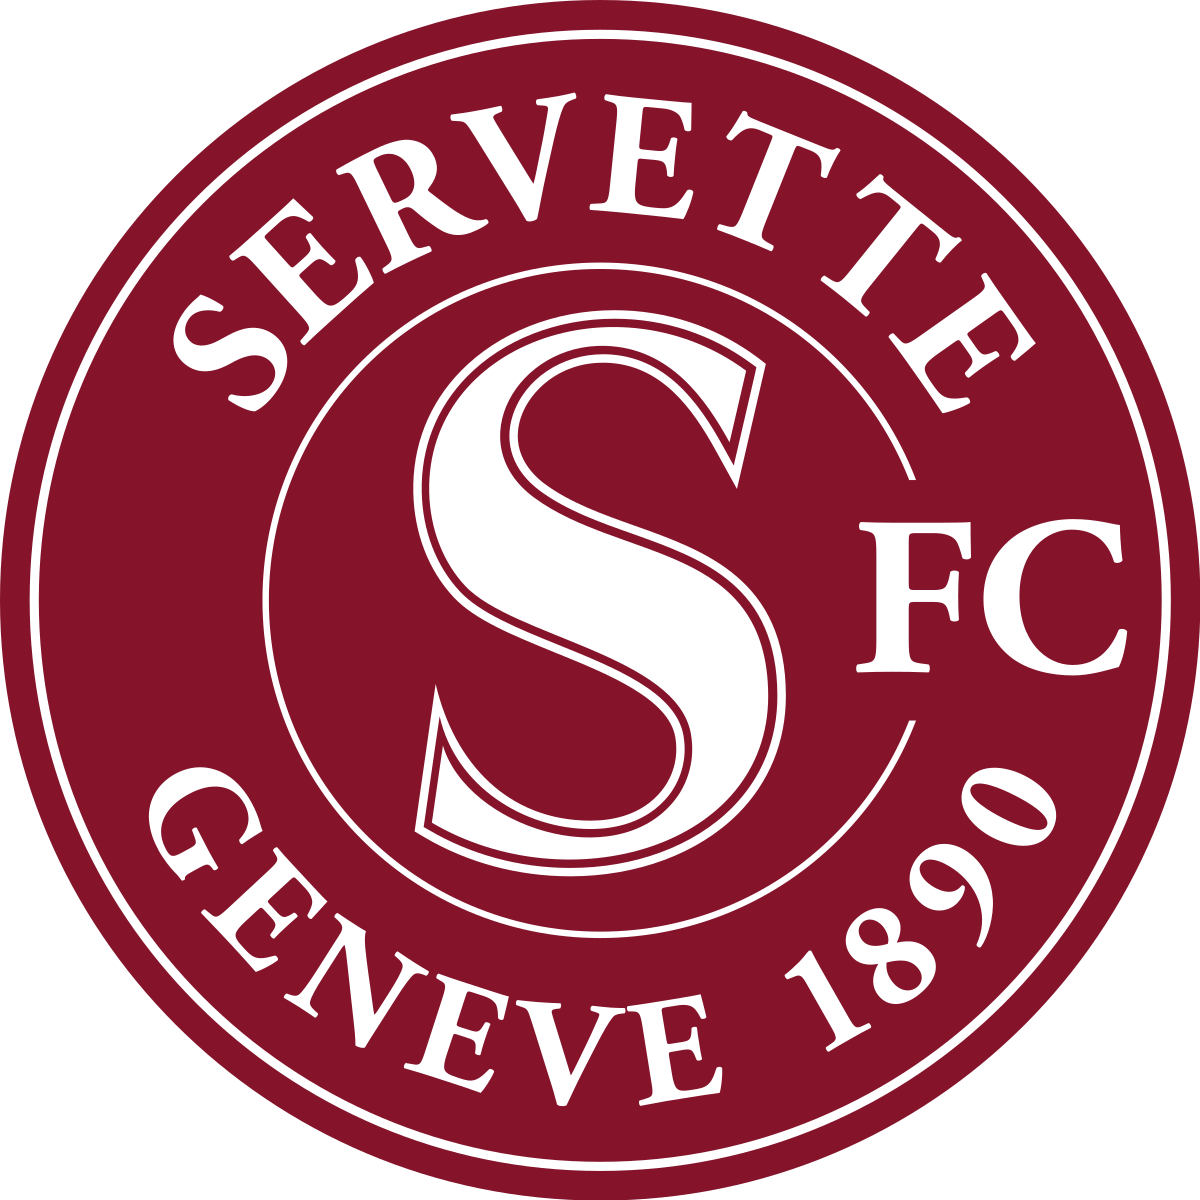 Places Servette FC